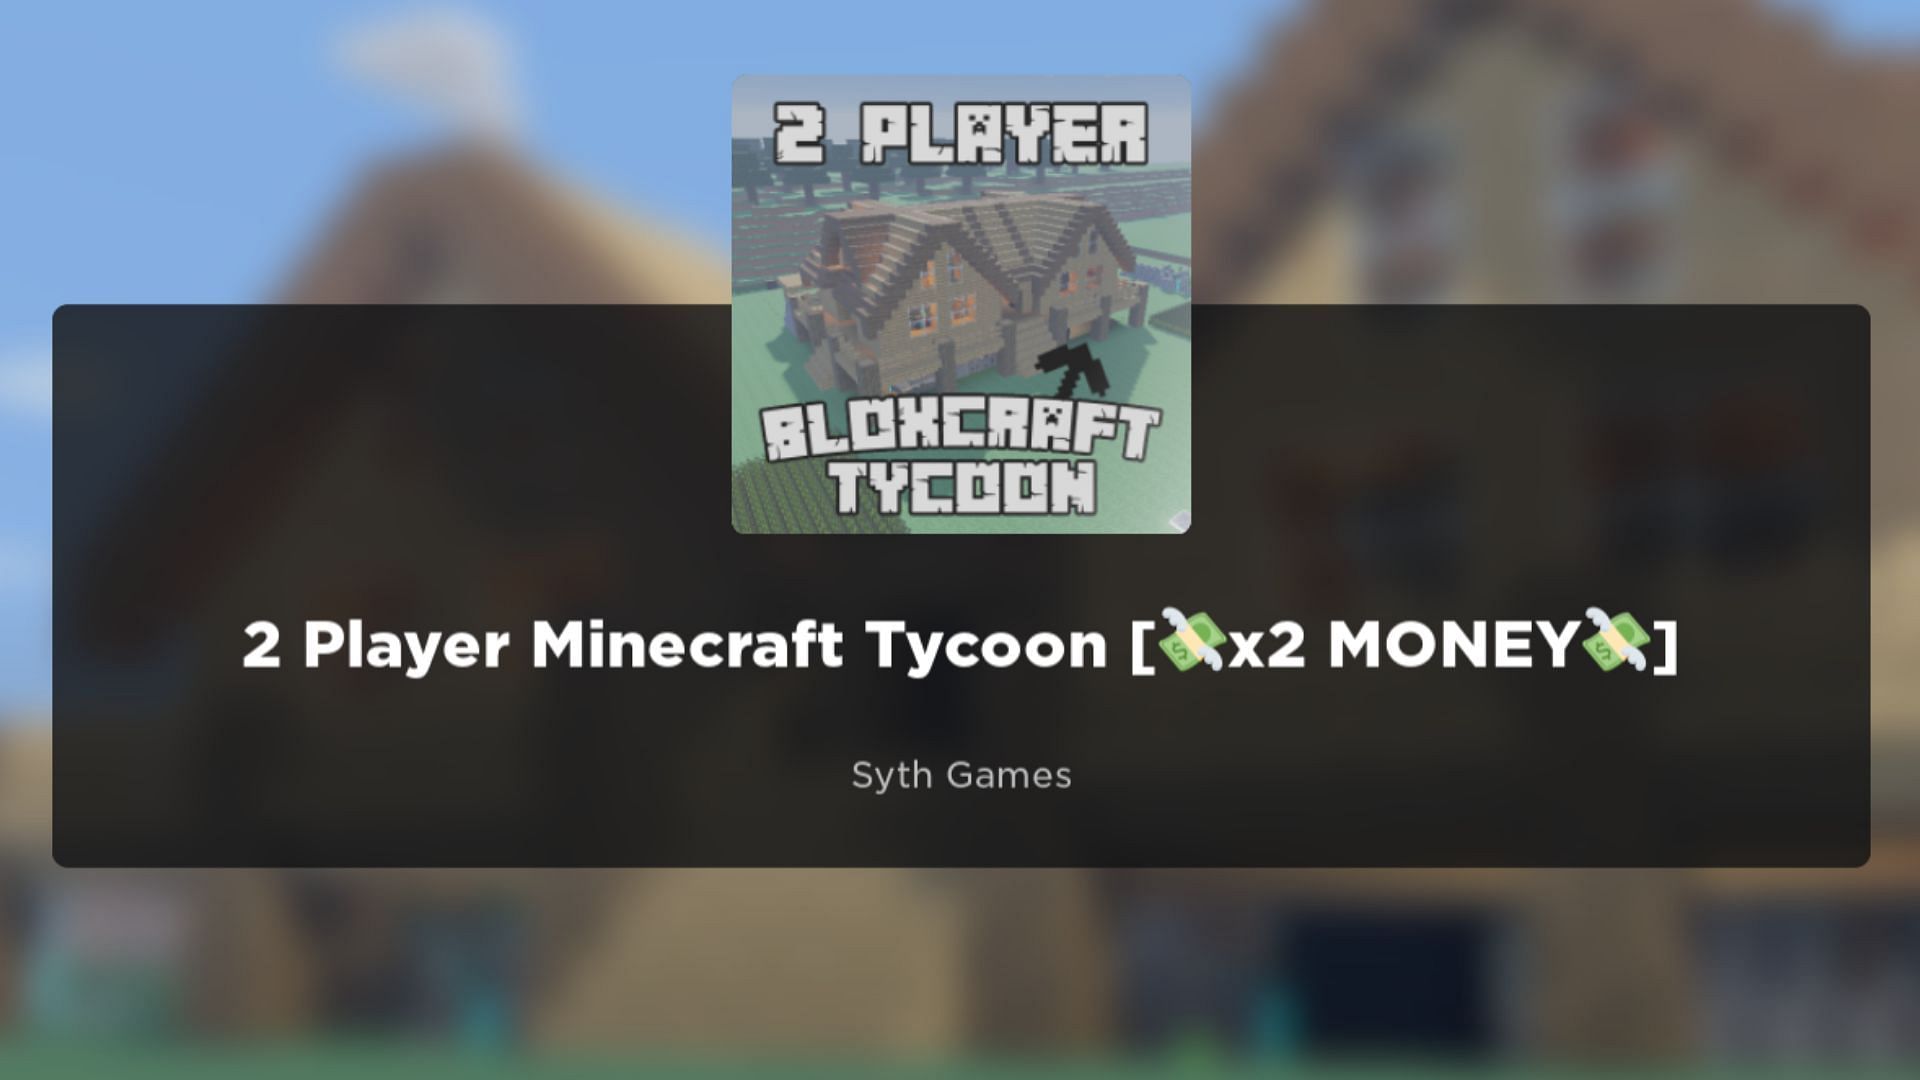 2 Player Minecraft Tycoon Codes